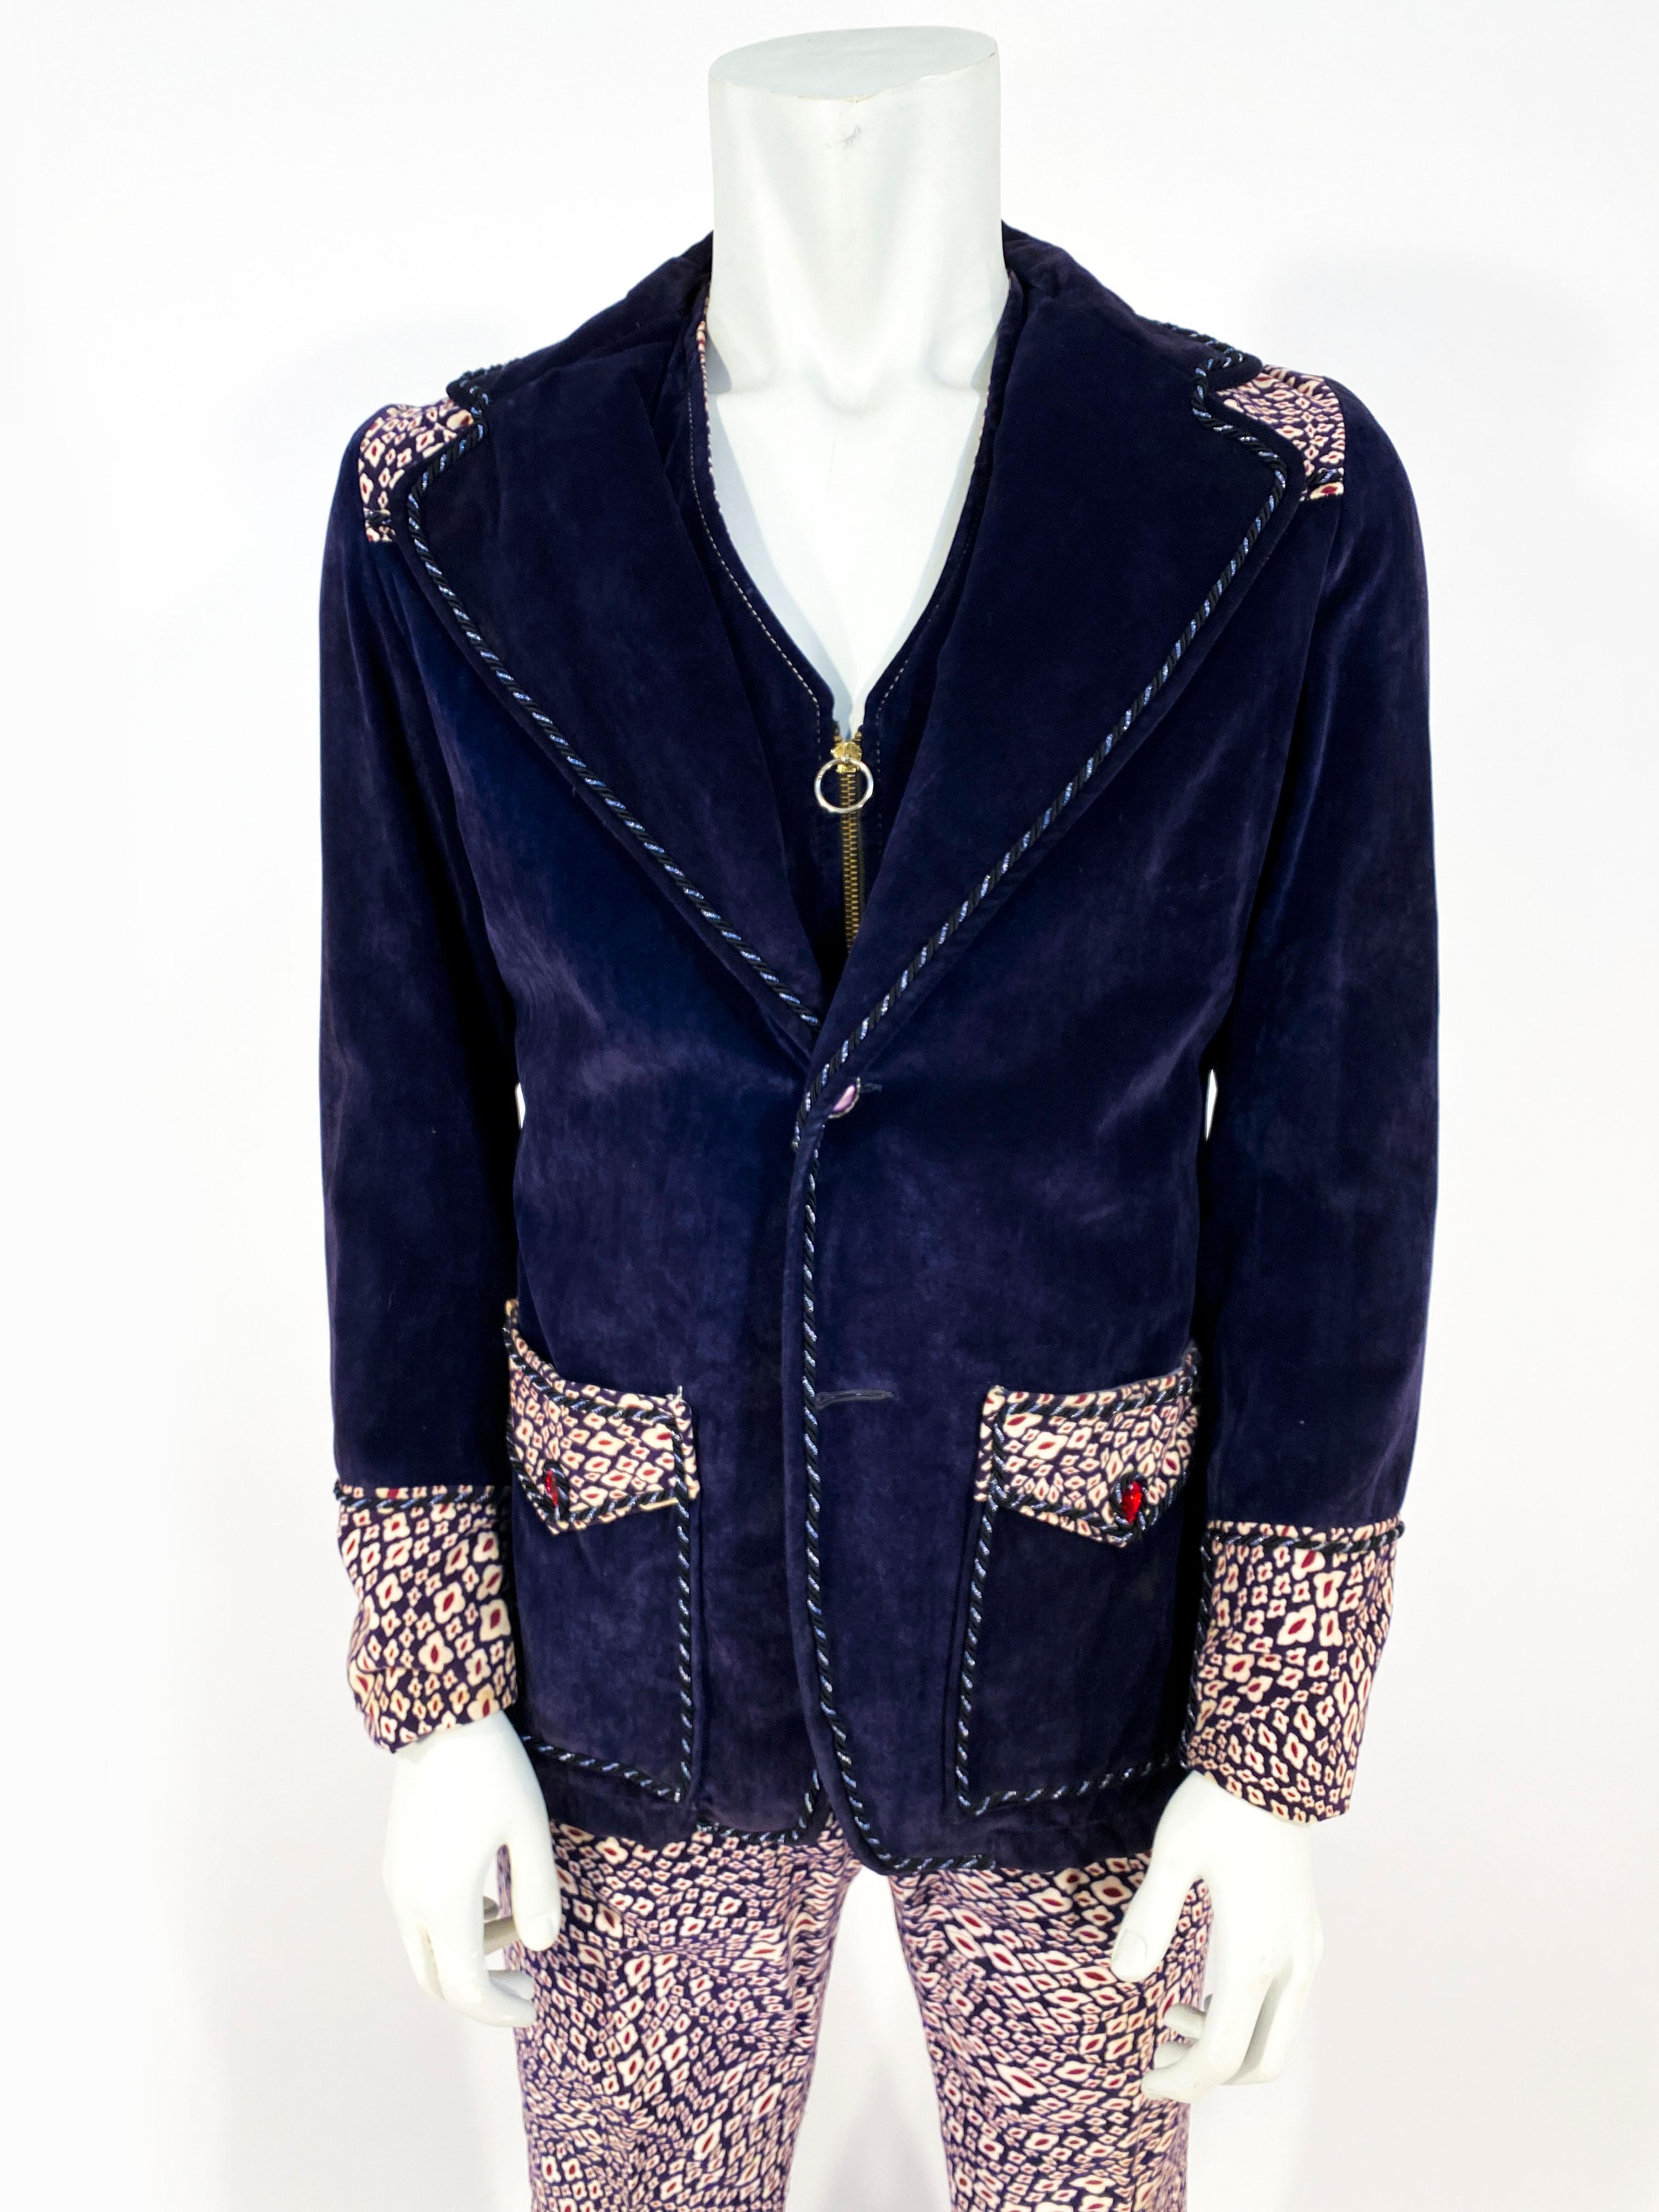 Costume trois pièces (veste, gilet et pantalon) en velours de coton modéré pour homme, fait sur mesure dans les années 1960. Le velours de coton est de couleur aubergine avec un tissu contrastant crème et rouge dans les accents de la veste, le gilet